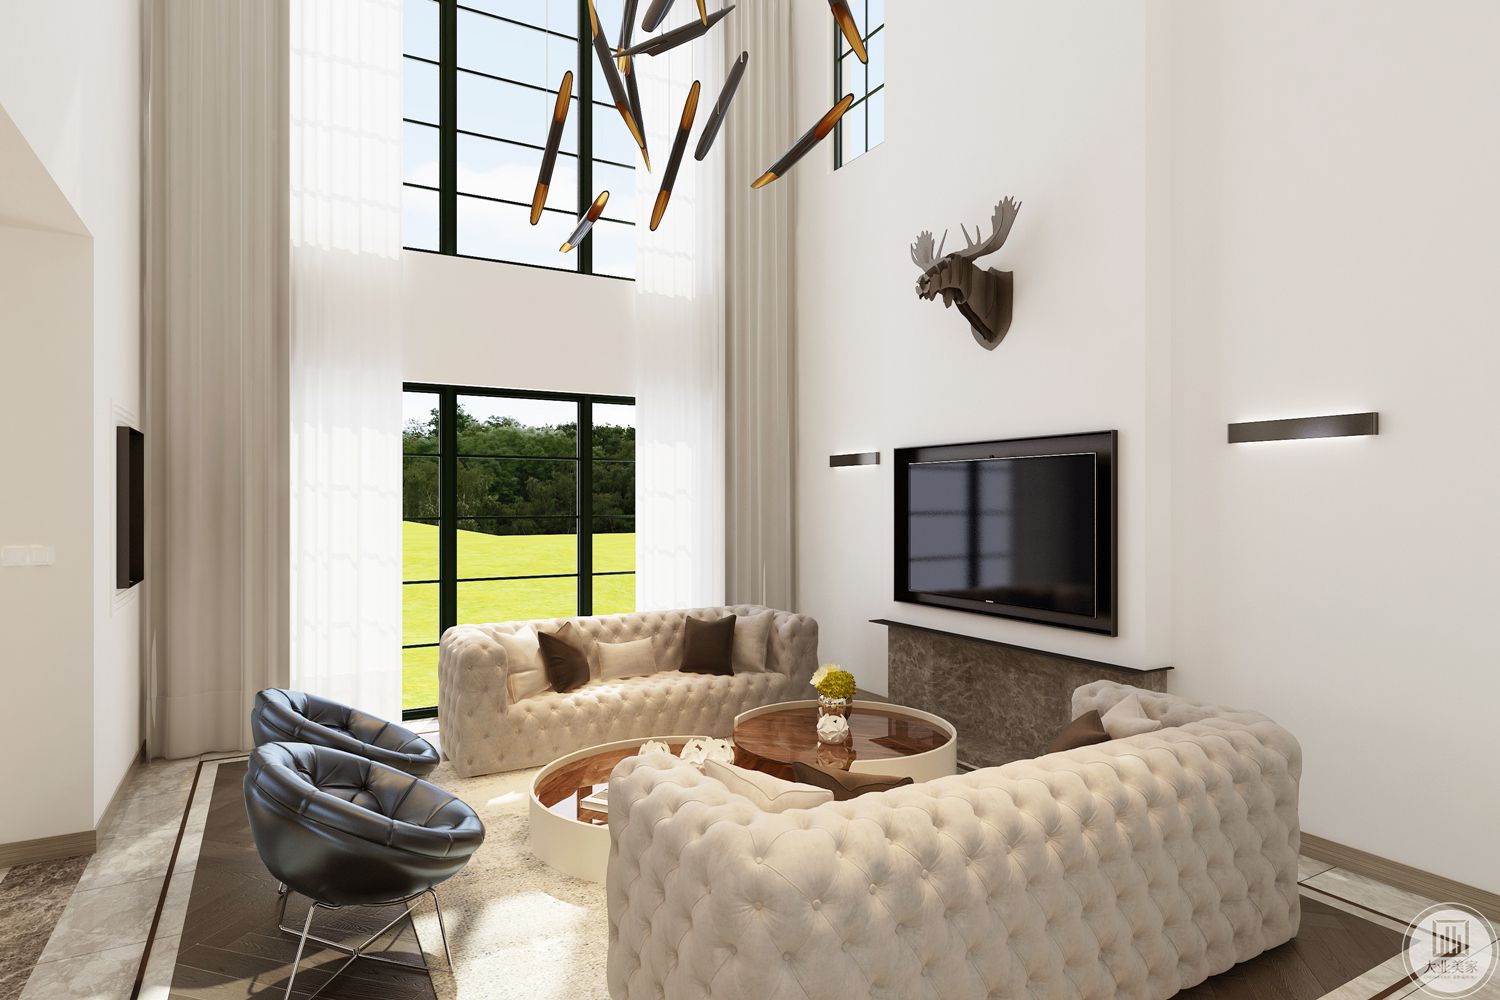 本案客厅的亮点在于景色和室内环境的融合，室内采用白色沙发配合着纯色地毯，屋内安静的环境与室外绿意盎然相映成趣，客厅主灯简洁大方，装饰少而精致。